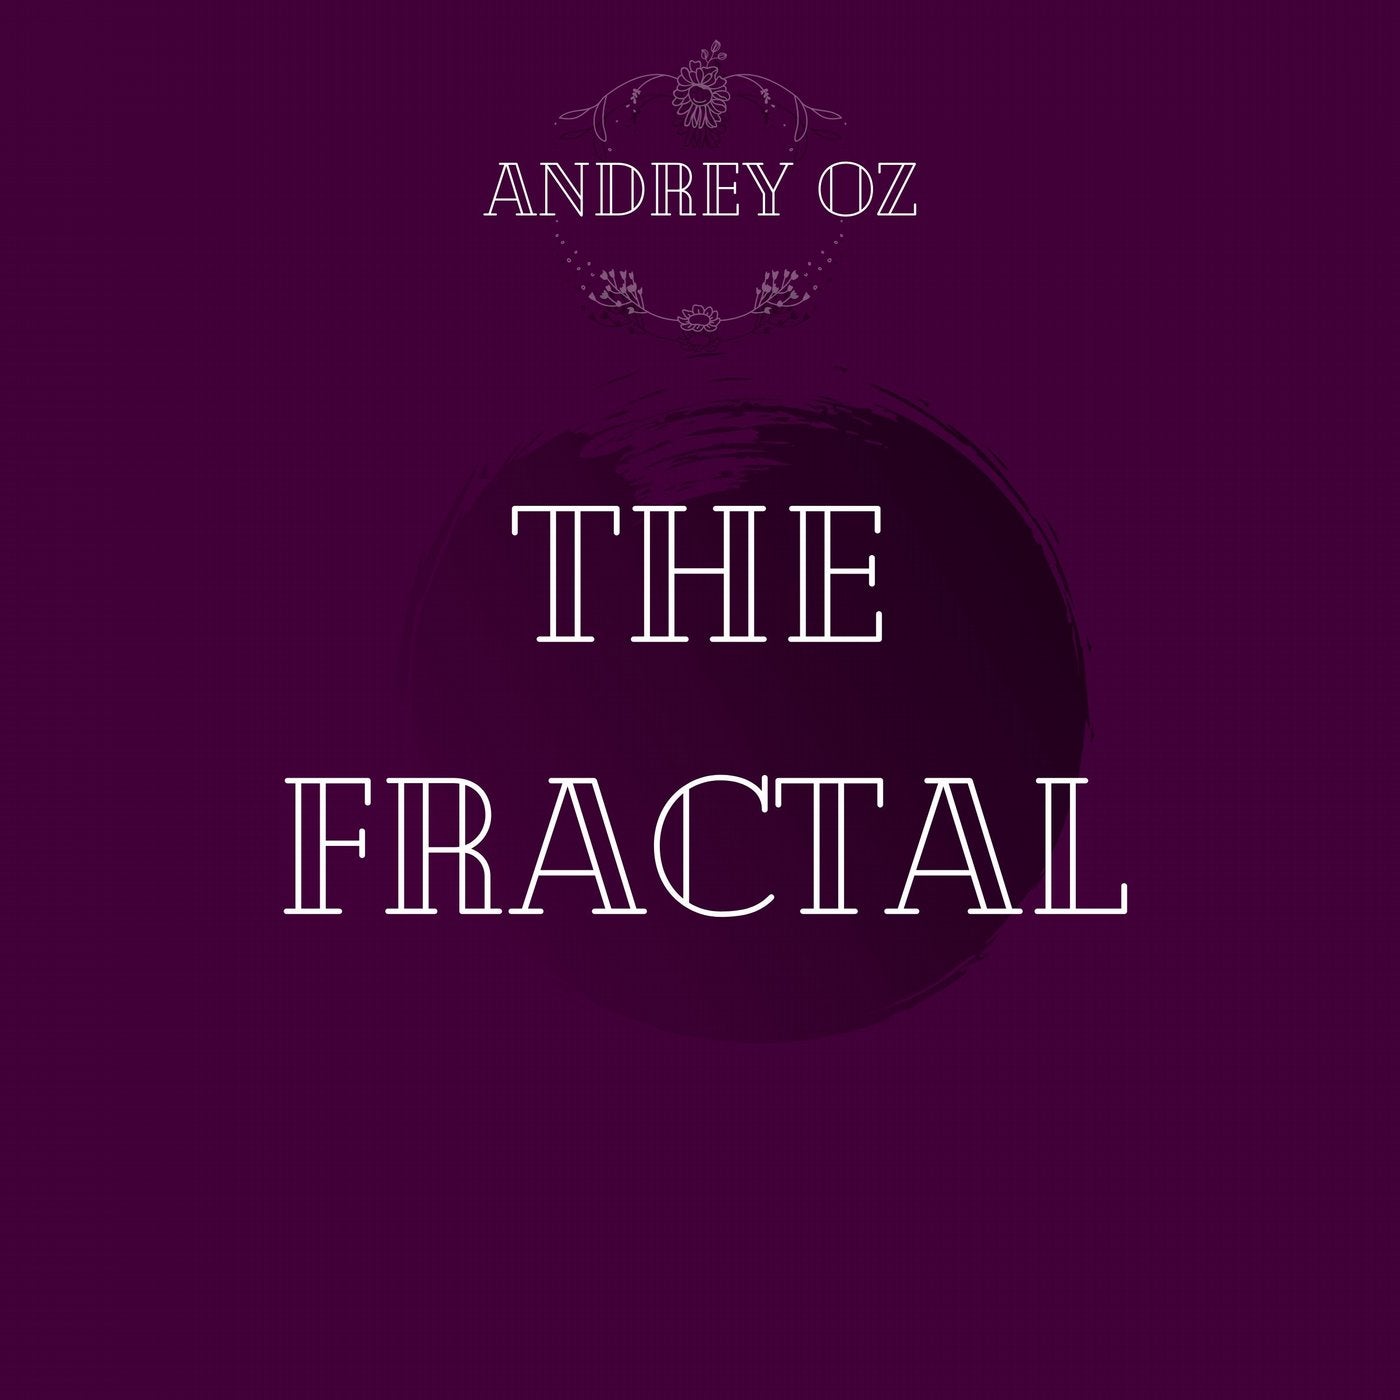 The Fractal